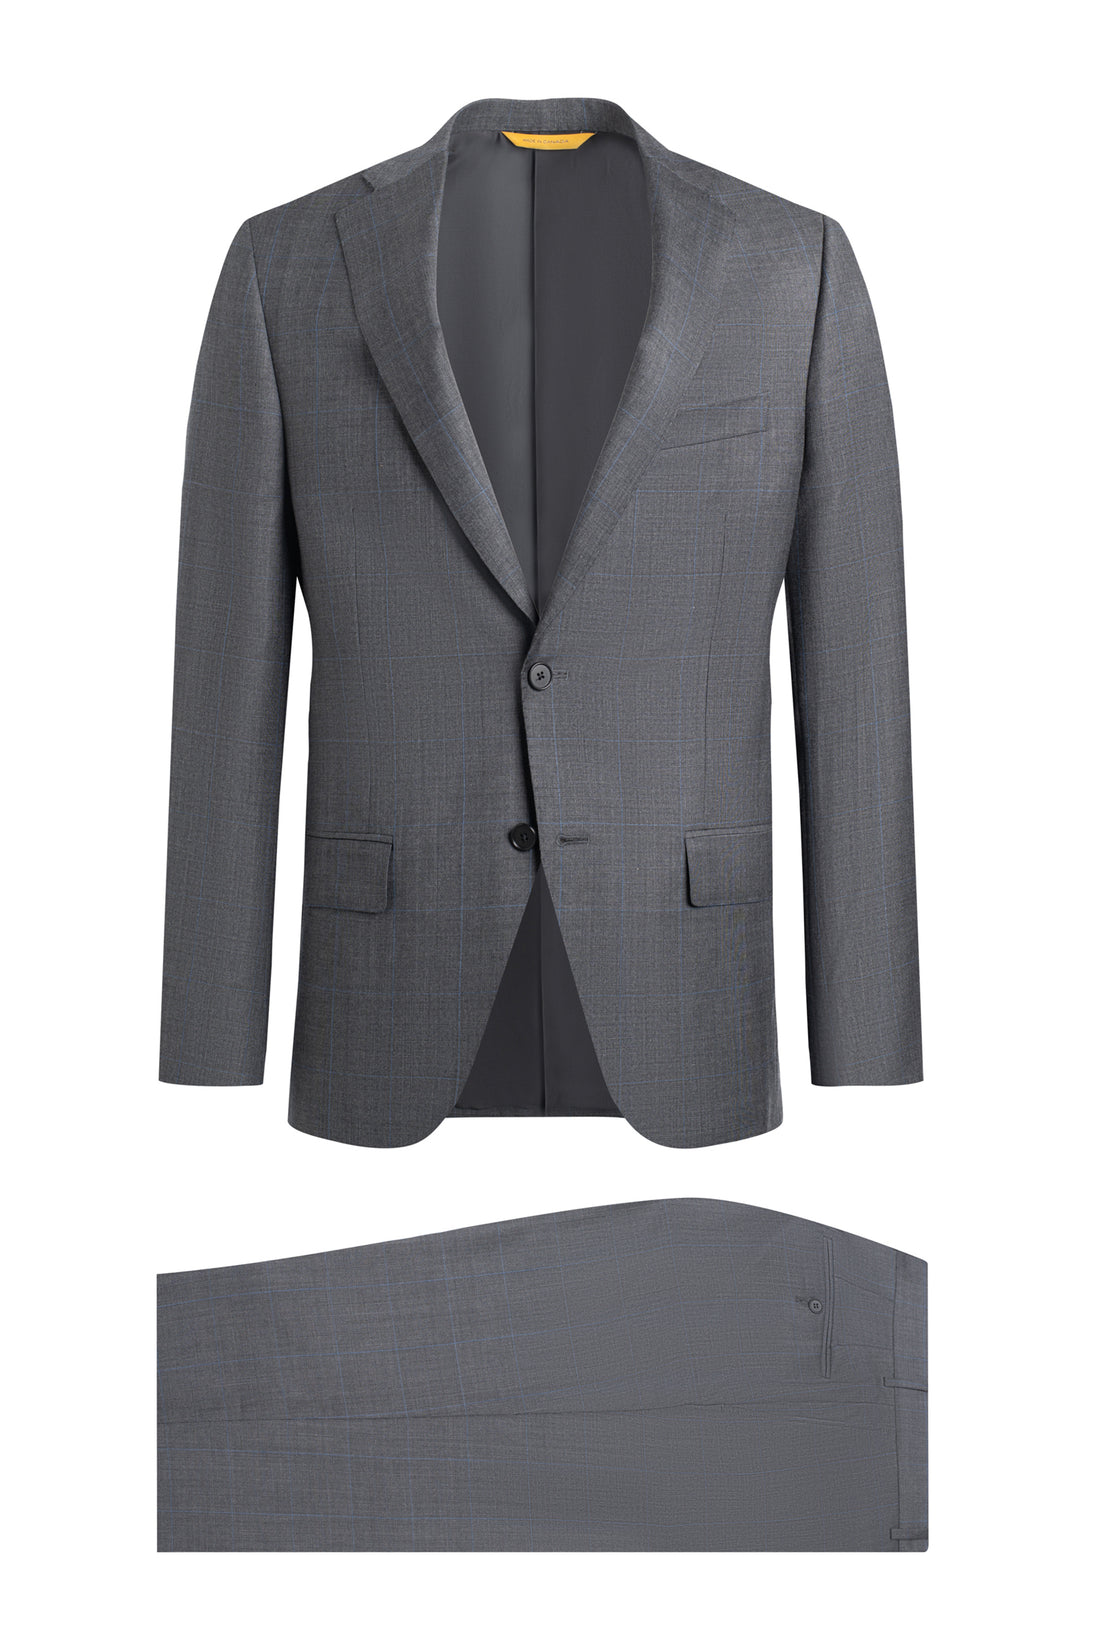 Dark Grey Plaid Suit